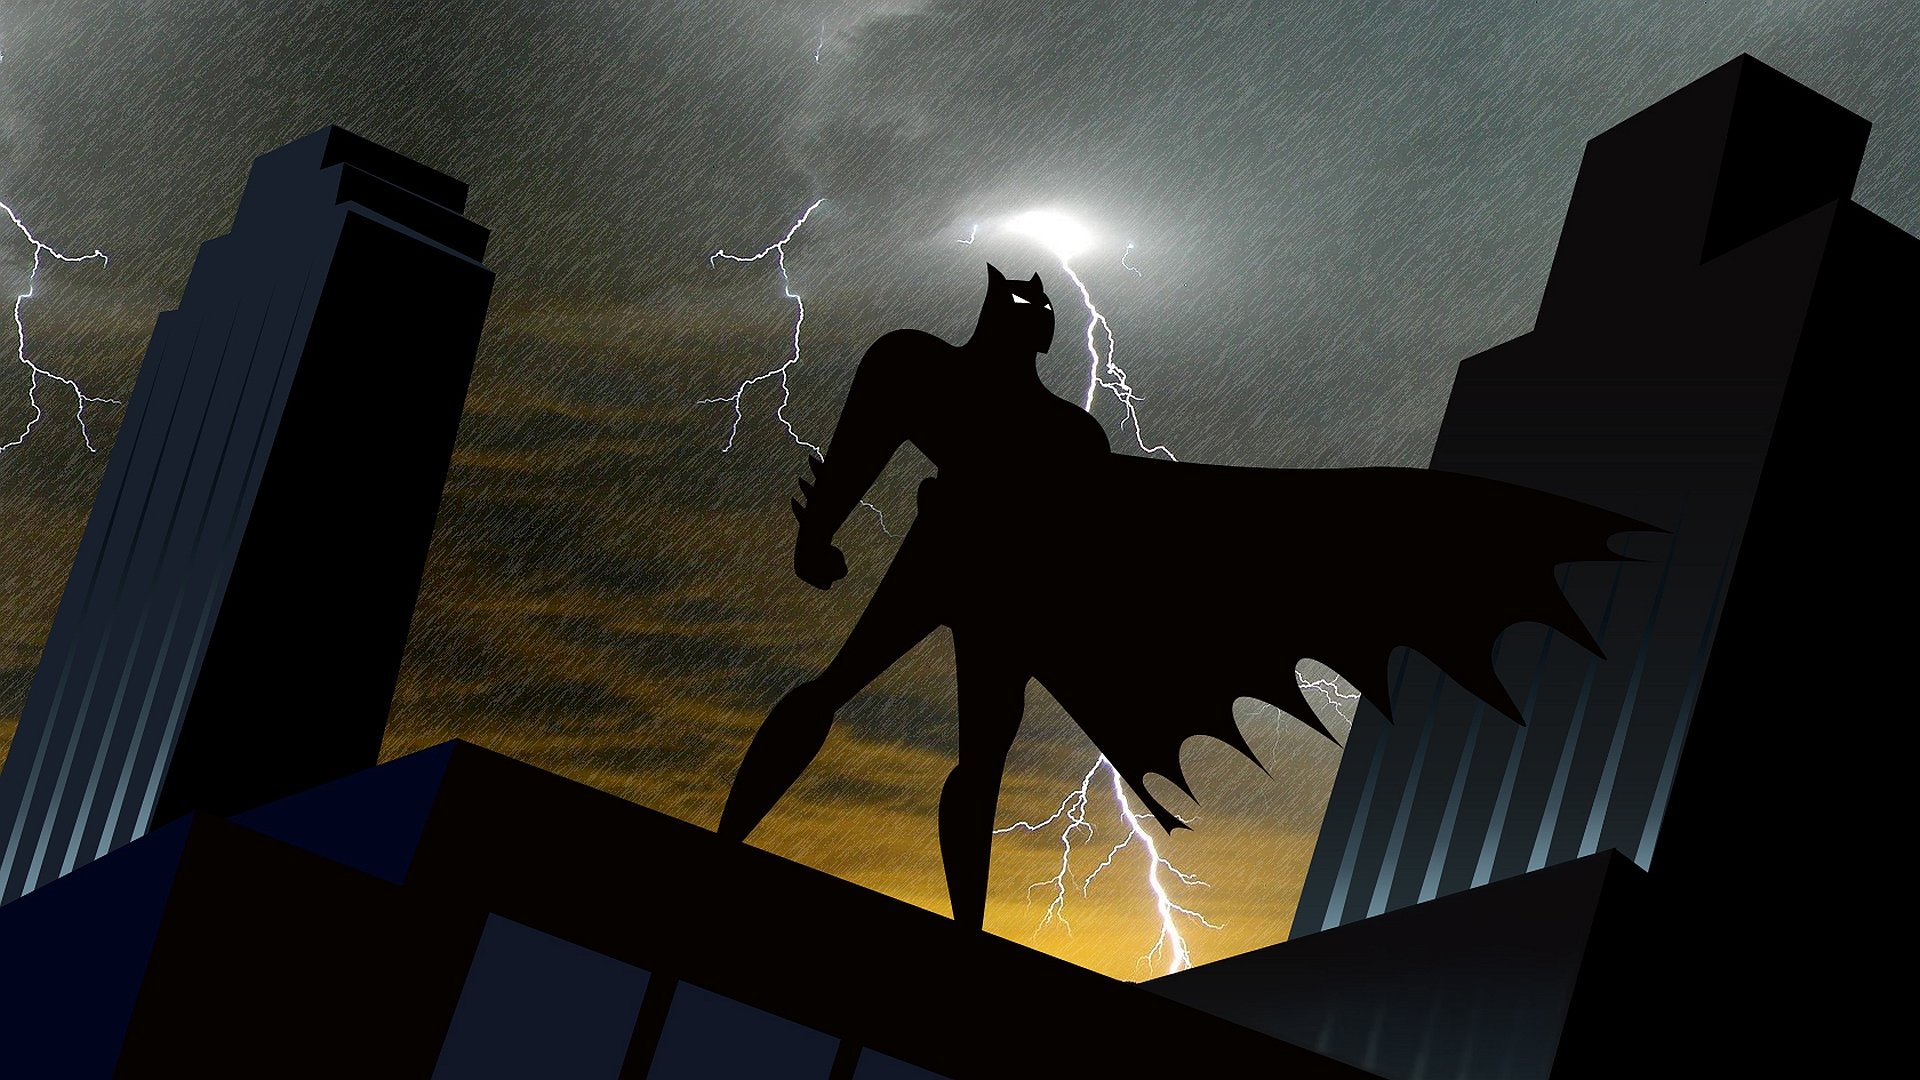 1080p Batman Desktop Wallpaper